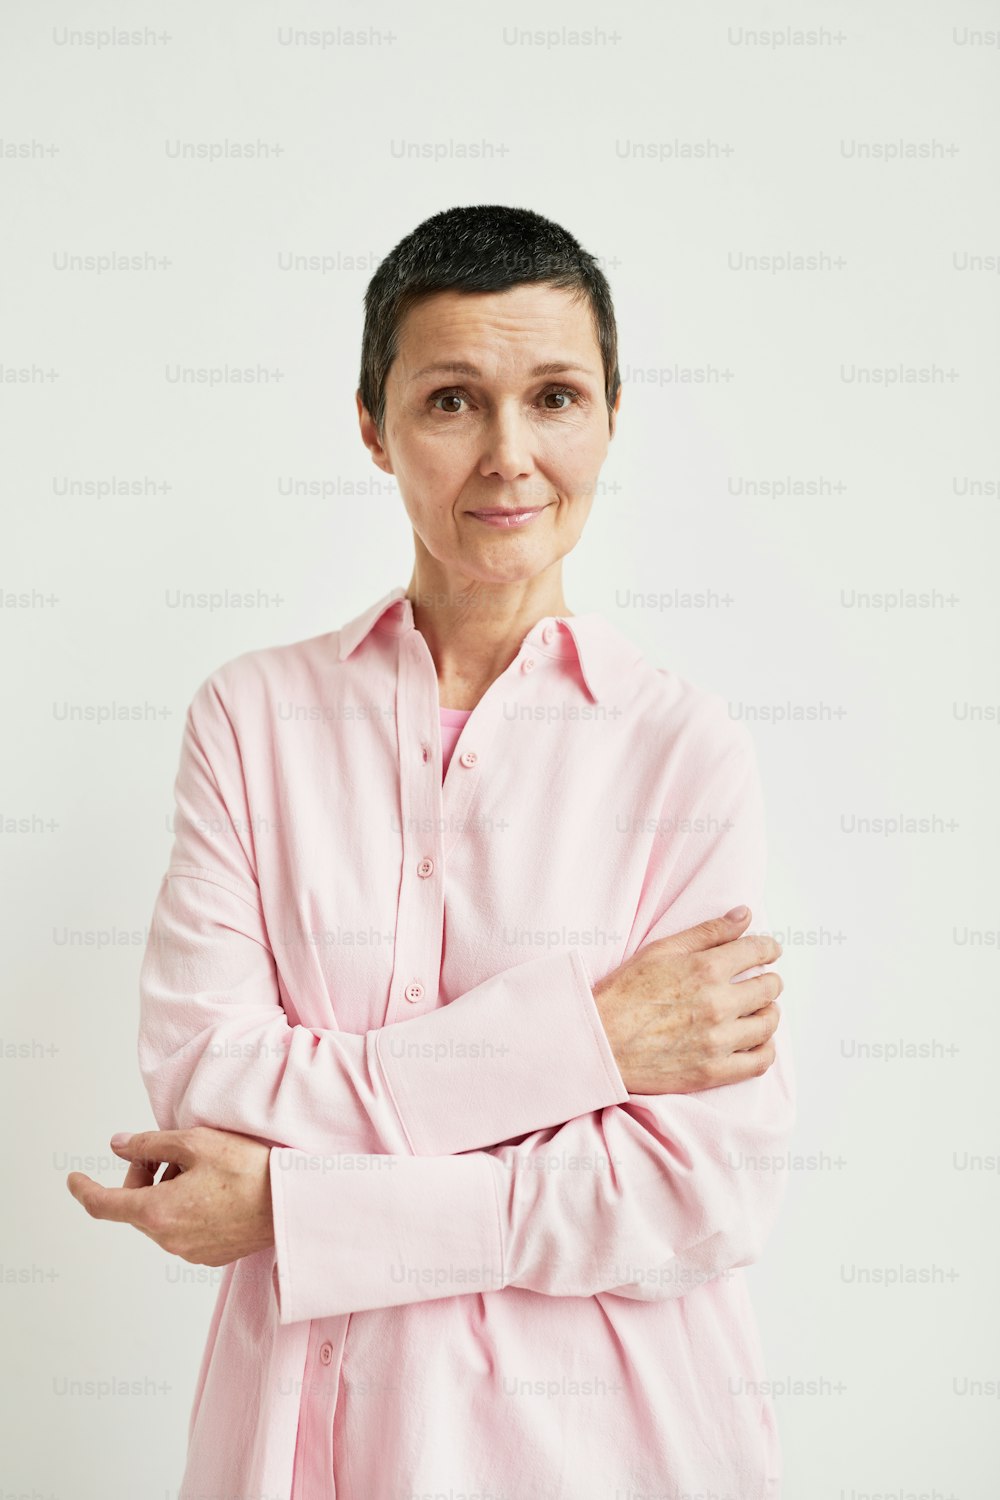 Minimales Porträt einer selbstbewussten reifen Frau mit kurzem Haarschnitt, die in die Kamera schaut, während sie ein rosa Hemd trägt